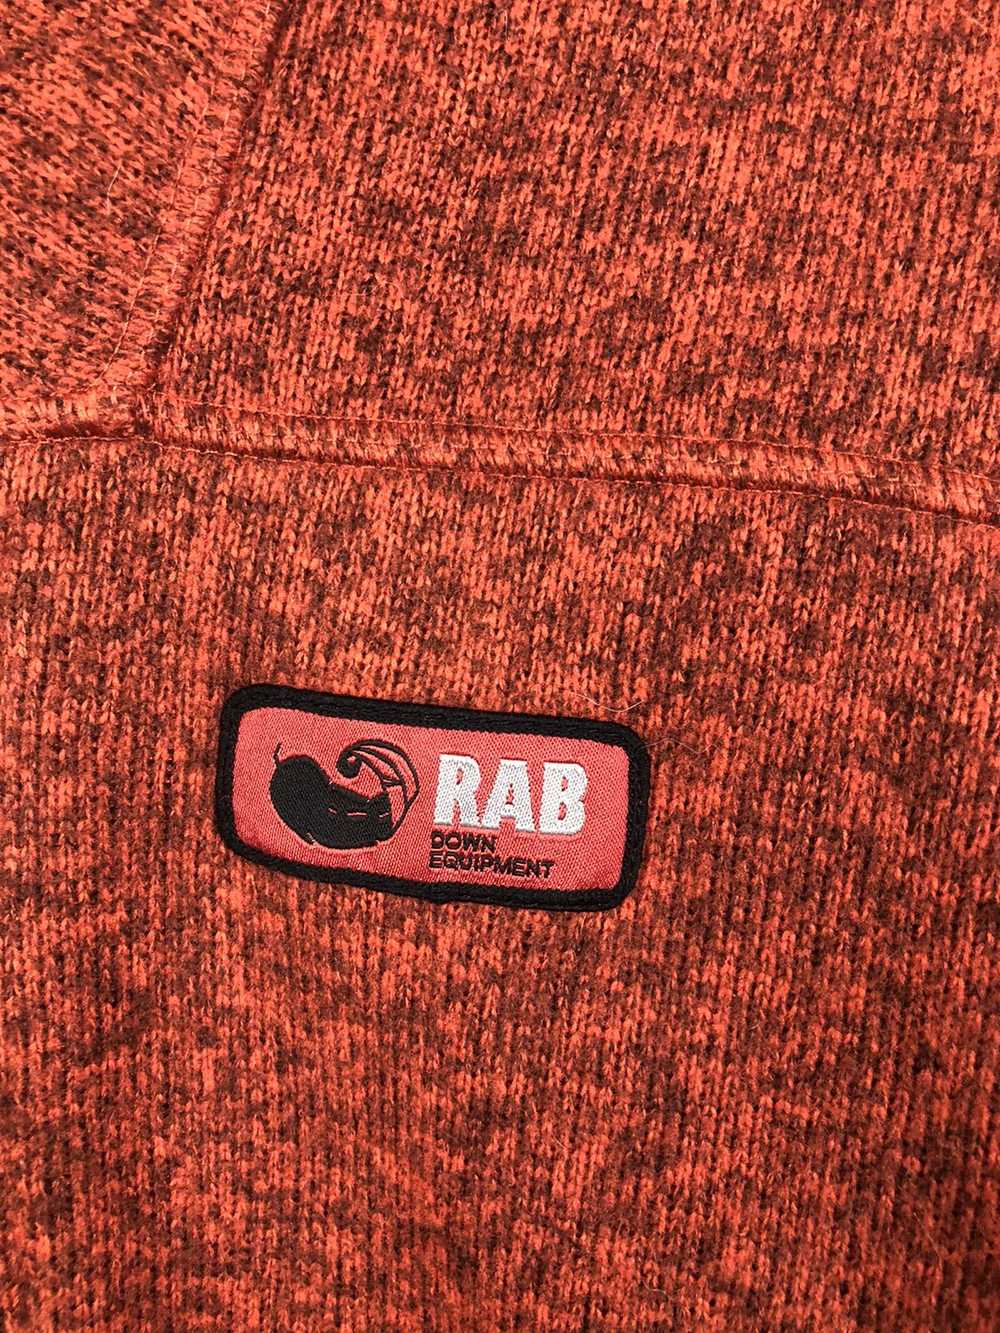 Outdoor Life × Rab Rab Down Equipment Fleece Zip … - image 3